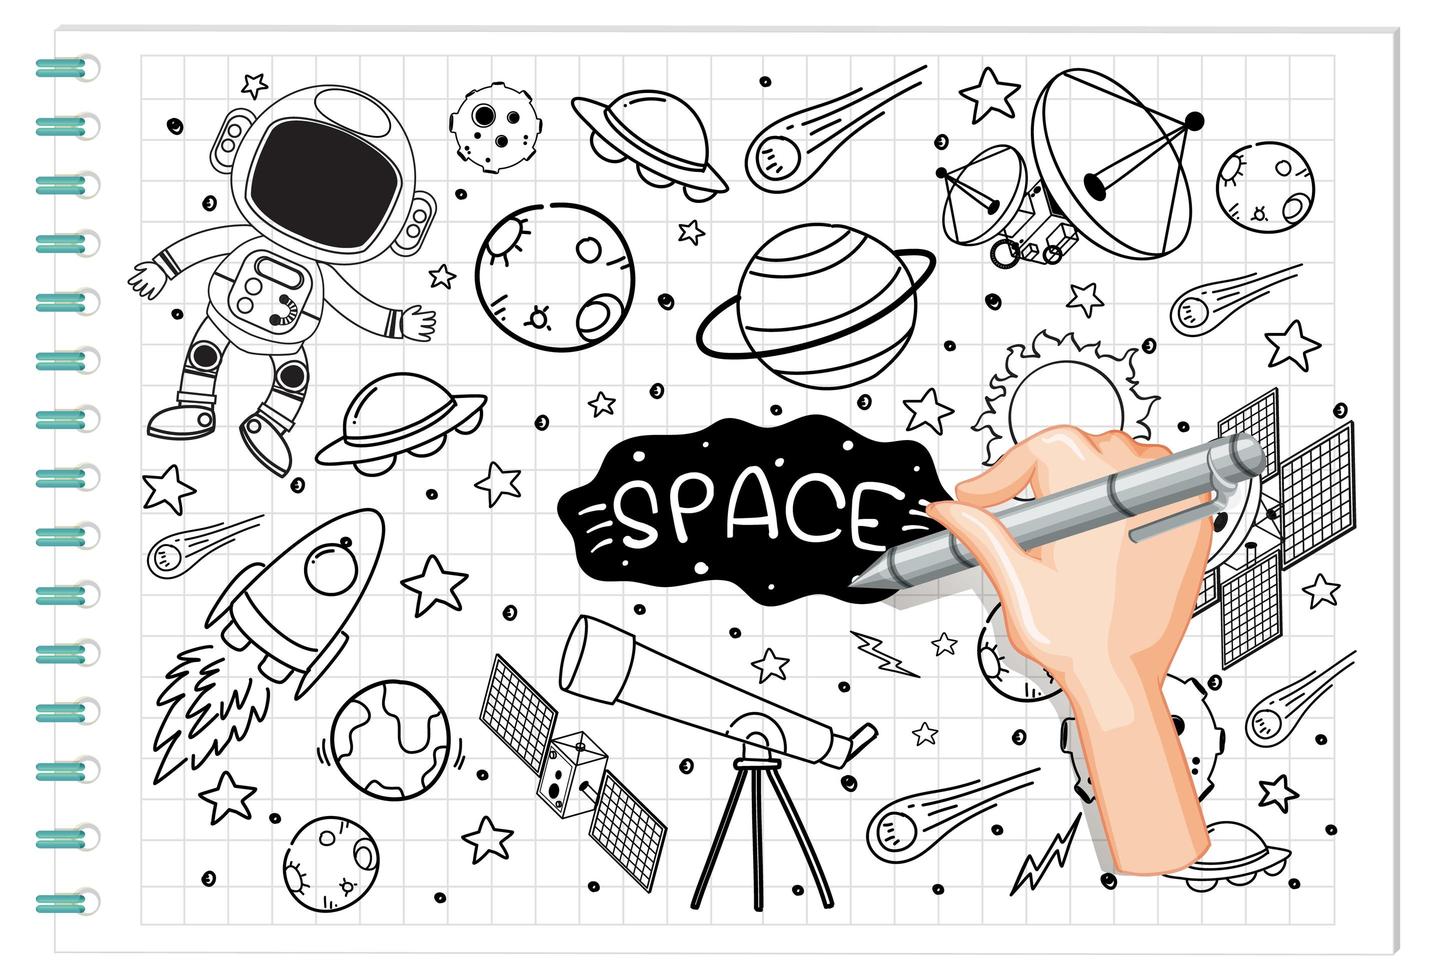 mão desenhando elemento de espaço em estilo doodle ou esboço no papel vetor